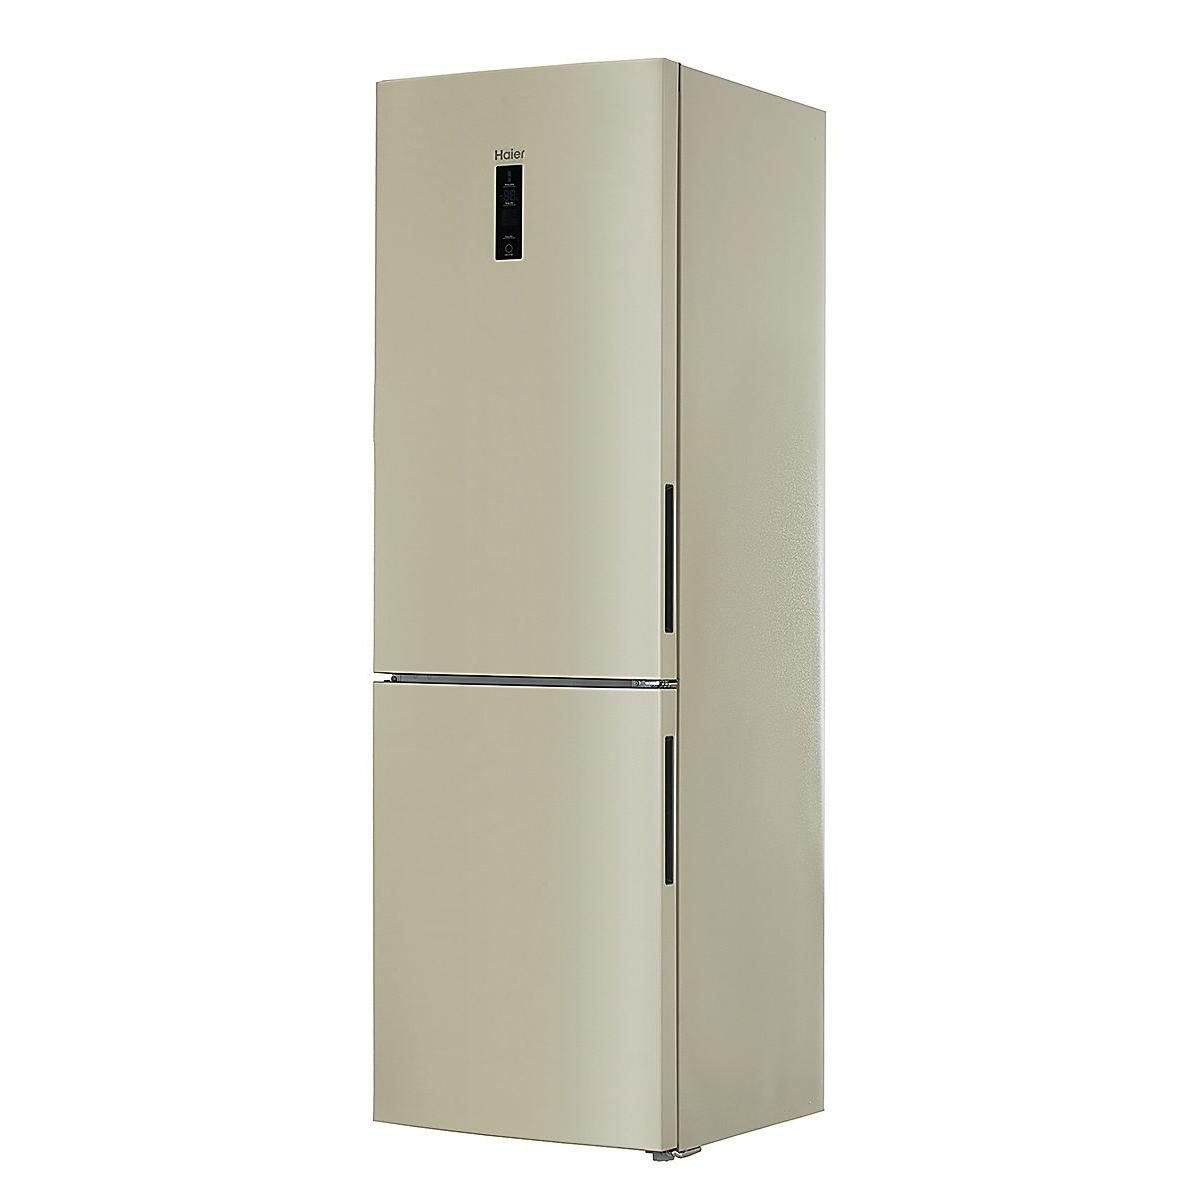 Haier c2f636c. Холодильник Haier c2f636ccrg. Холодильник Хайер с2f636ccrg бежевый. Холодильник Haier c2f636ccrg бежевый. Холодильник Хаер 636 бежевый.